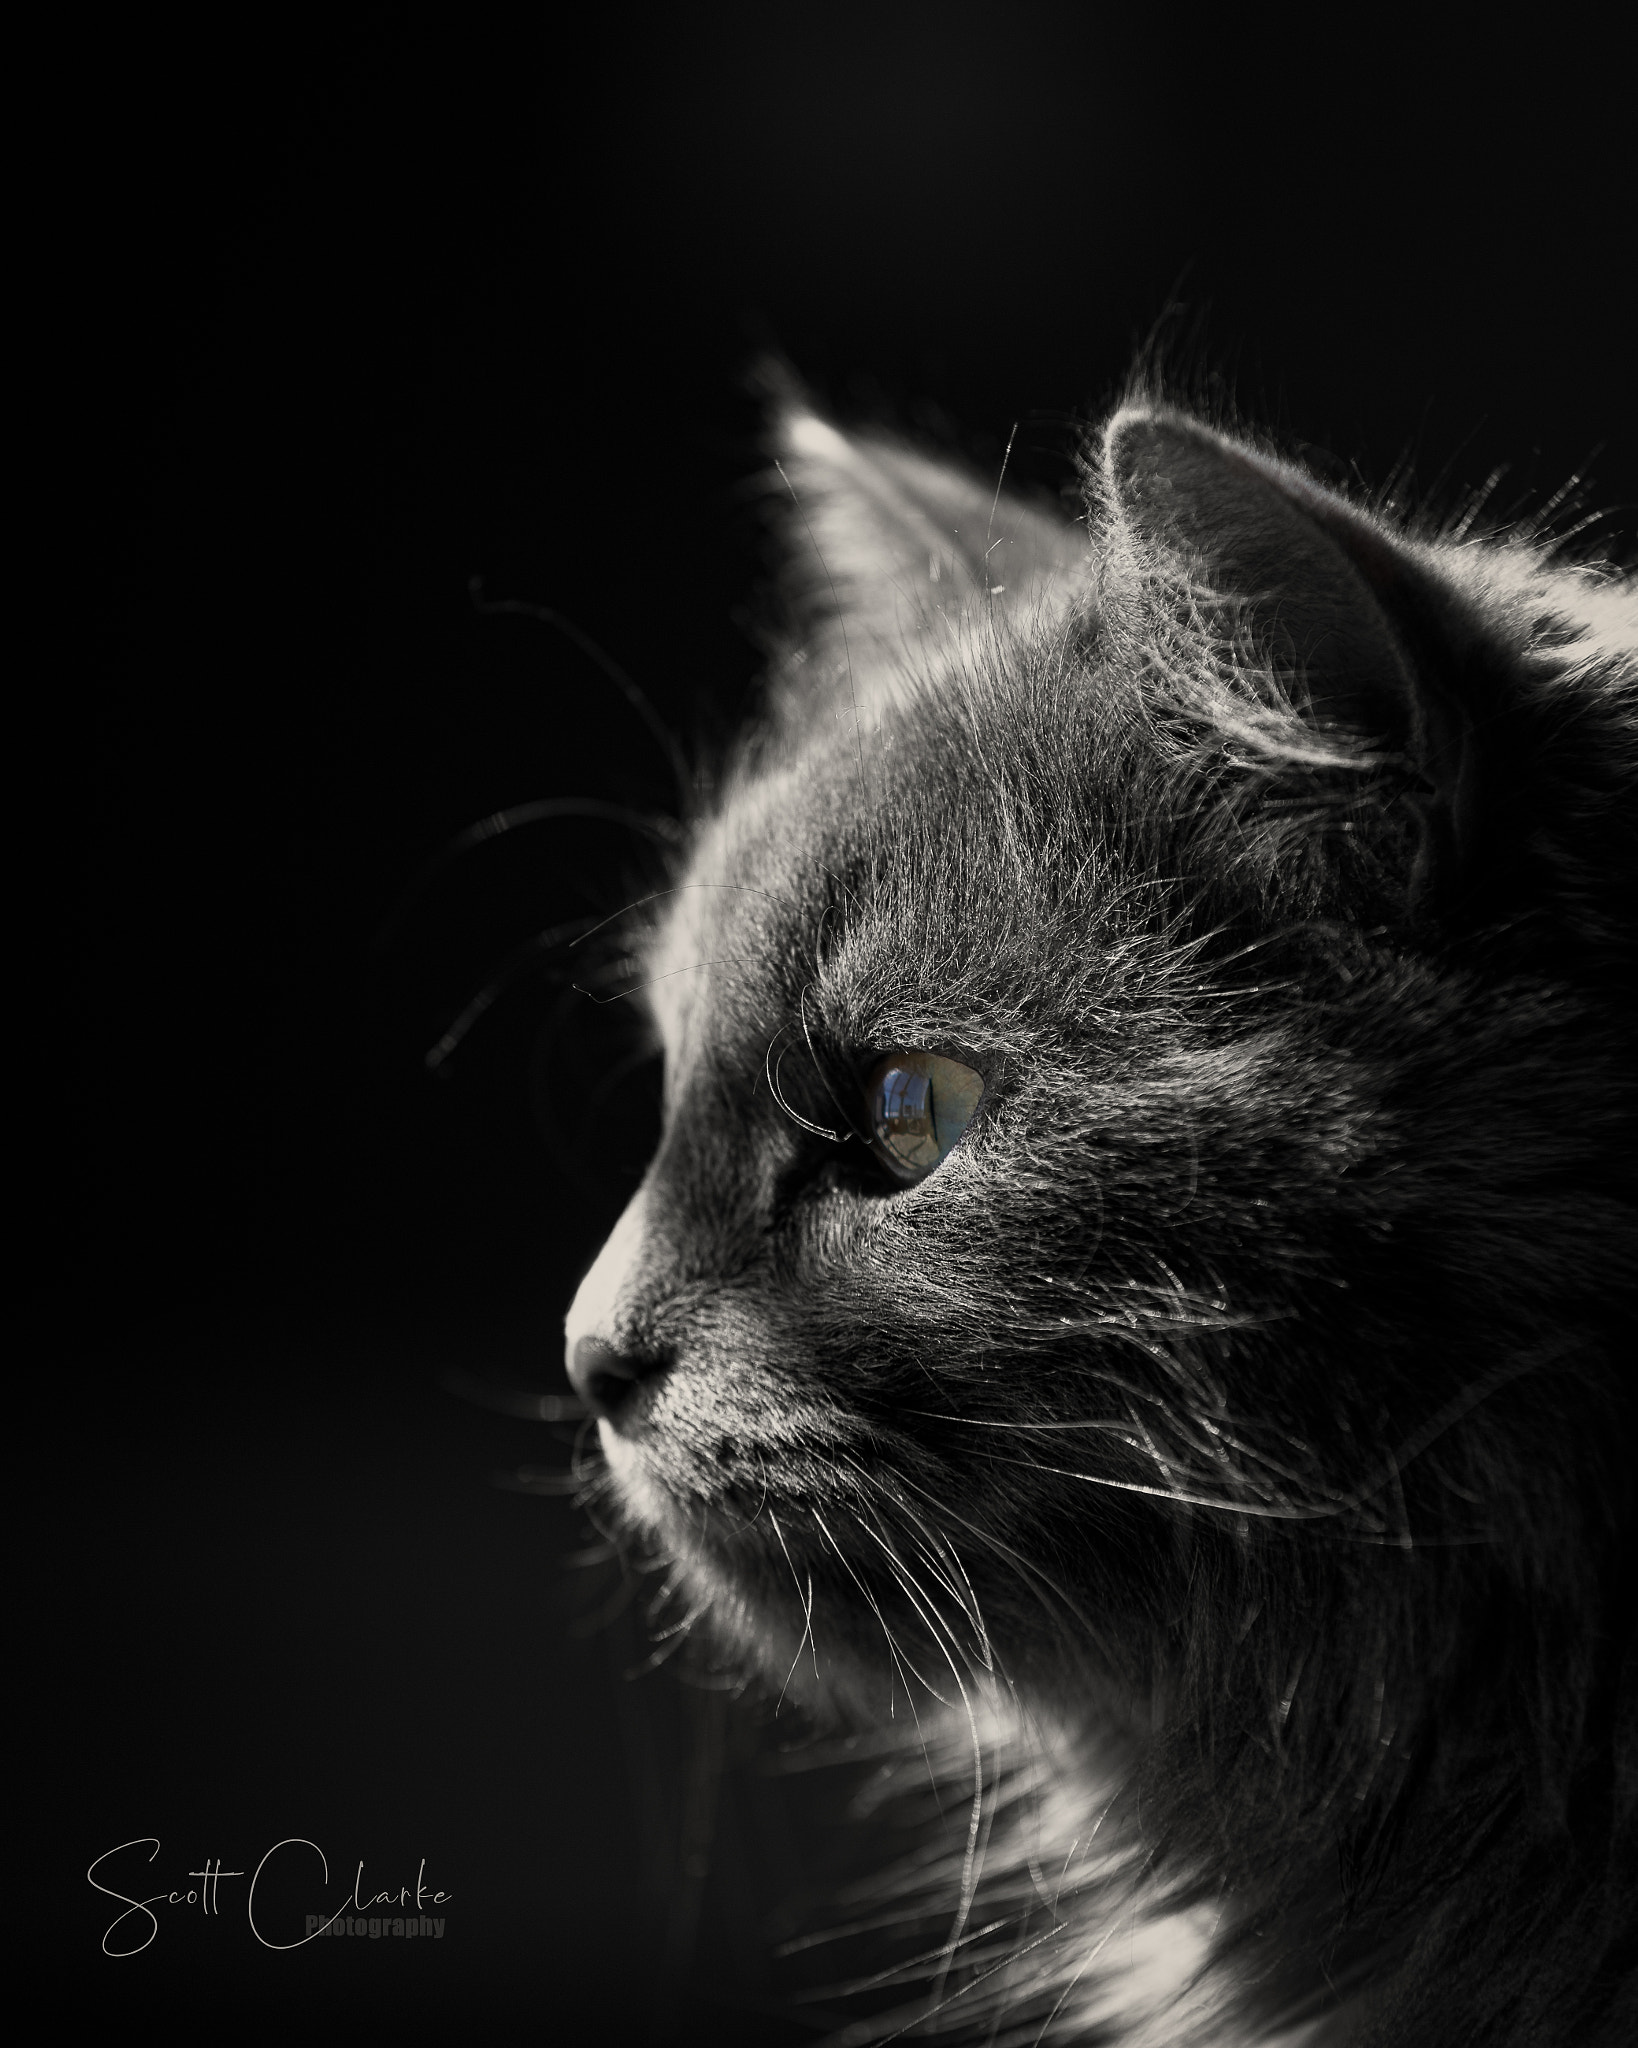 Фото Кот в профиль на черном фоне, by Scott Clarke